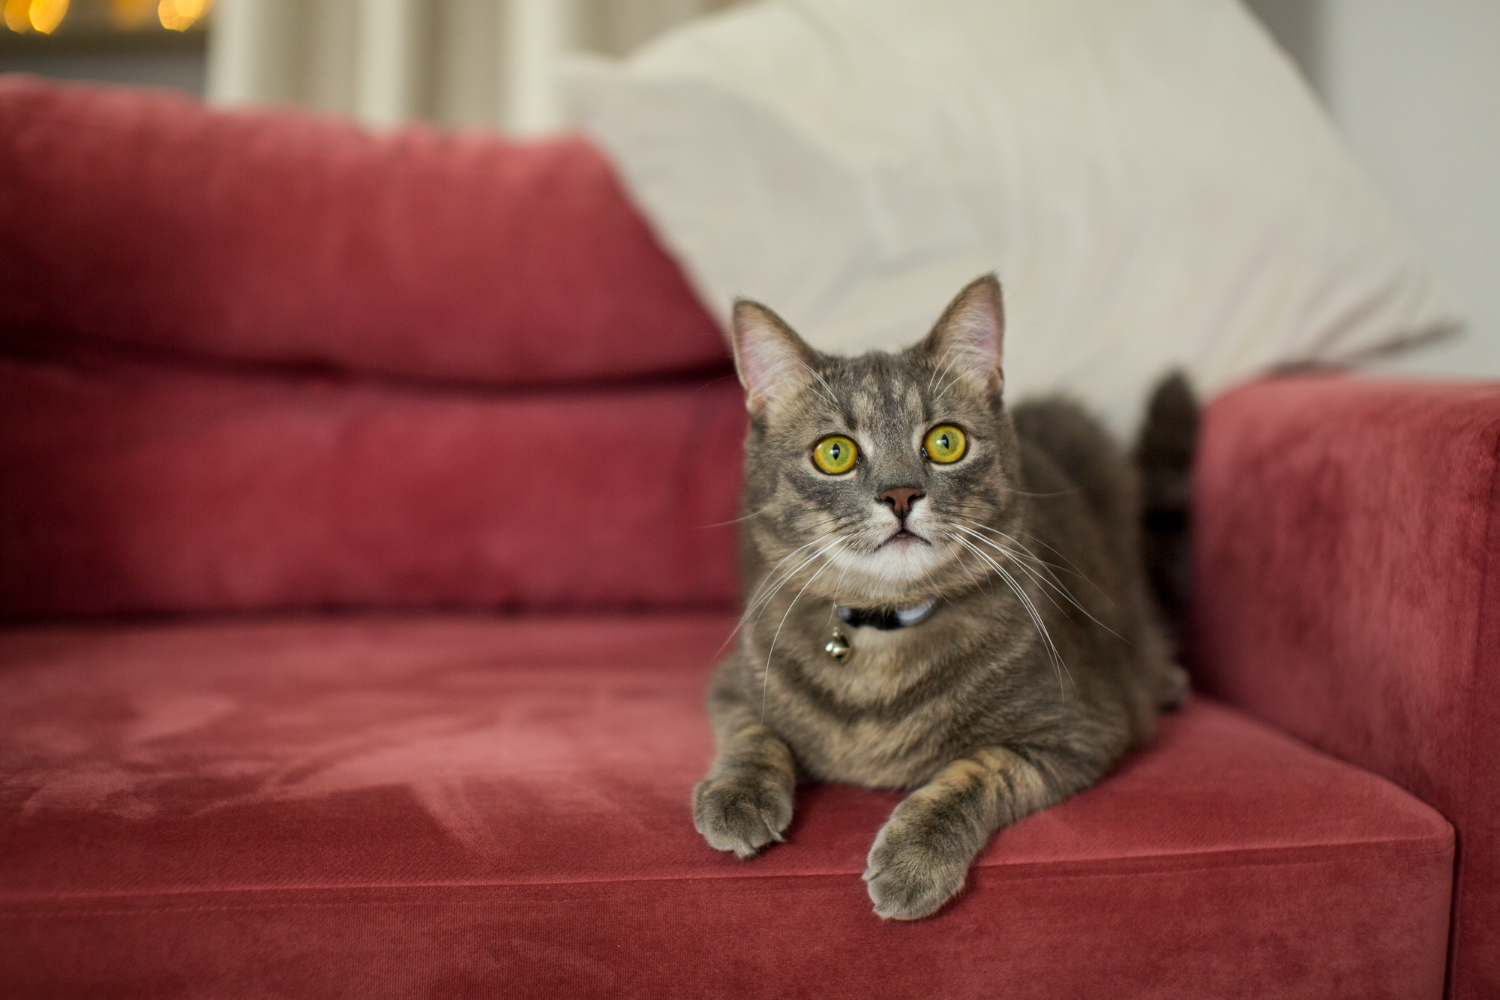 Truque genial mostra como acabar com os pelos de gato no sofá